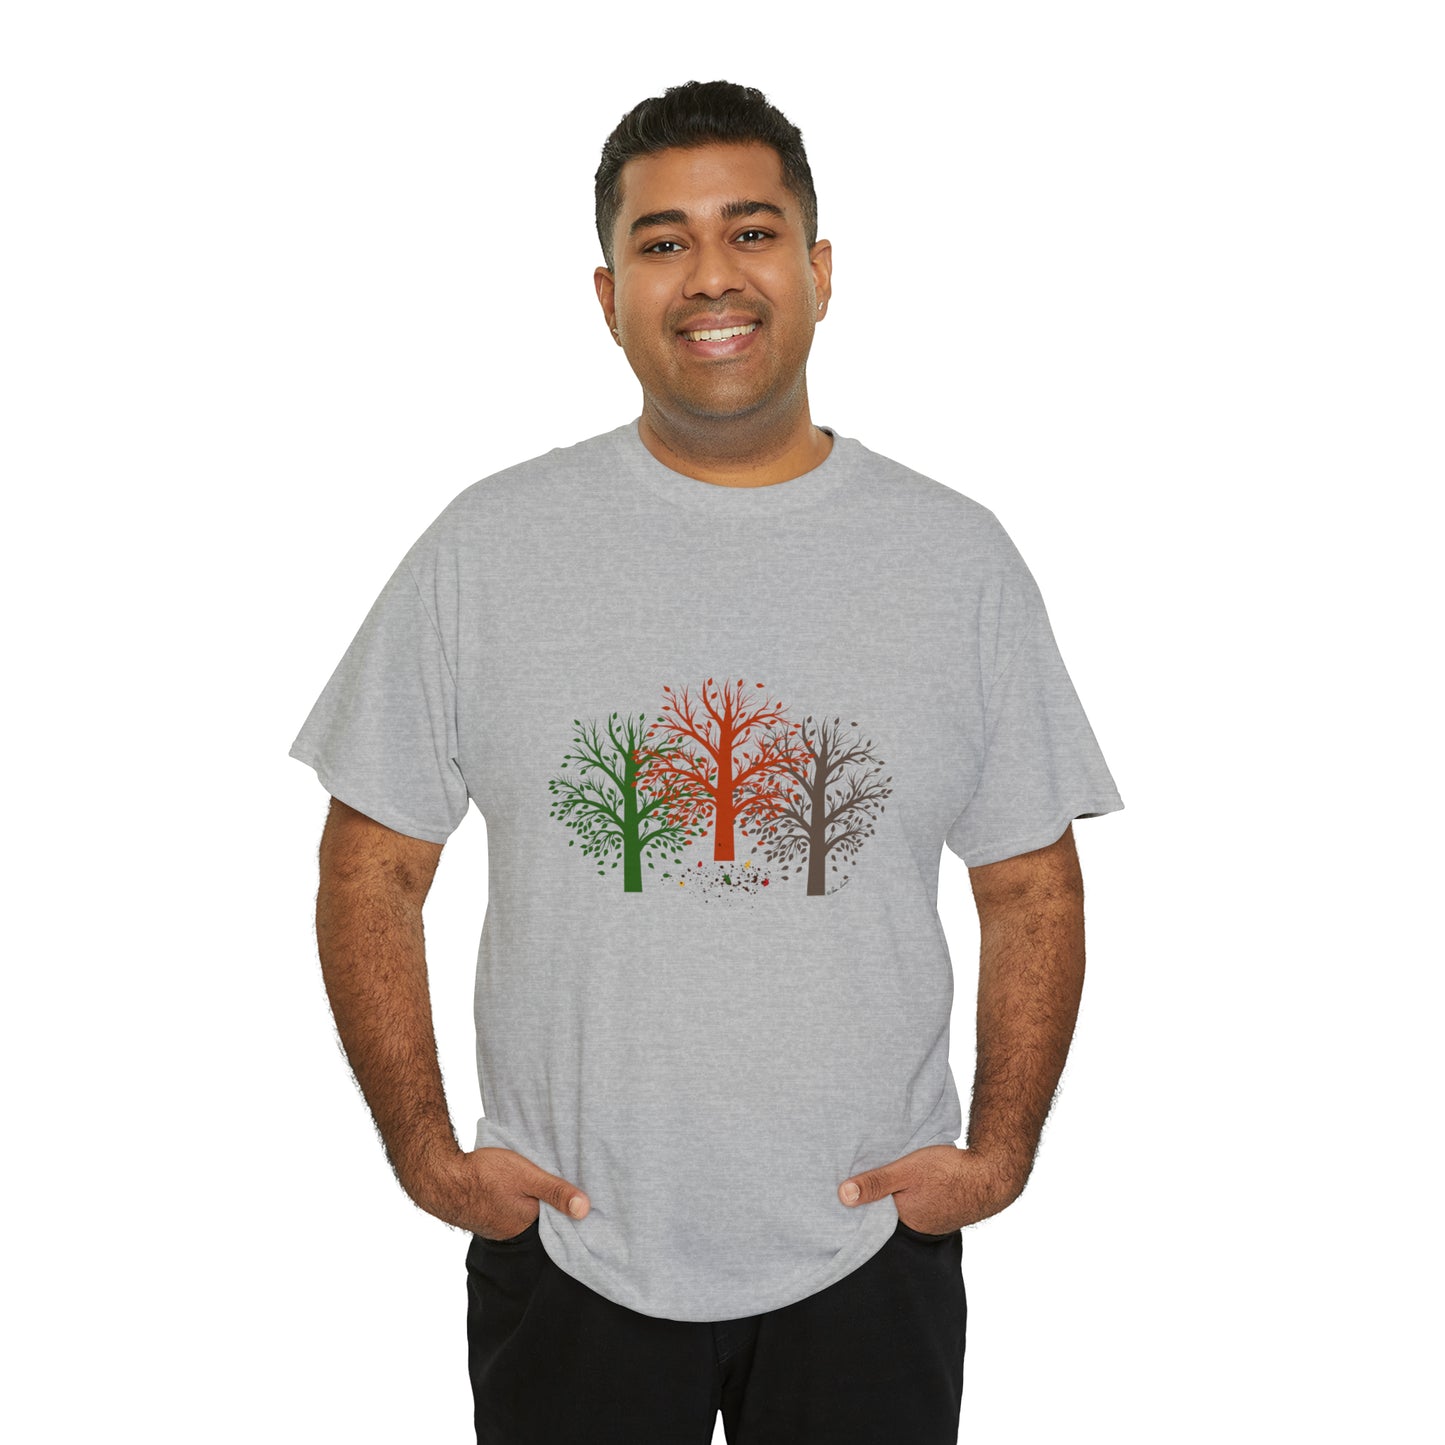 Unisex Autumn-Trees T-shirt: Cotton; 3 colors; Gildan brand